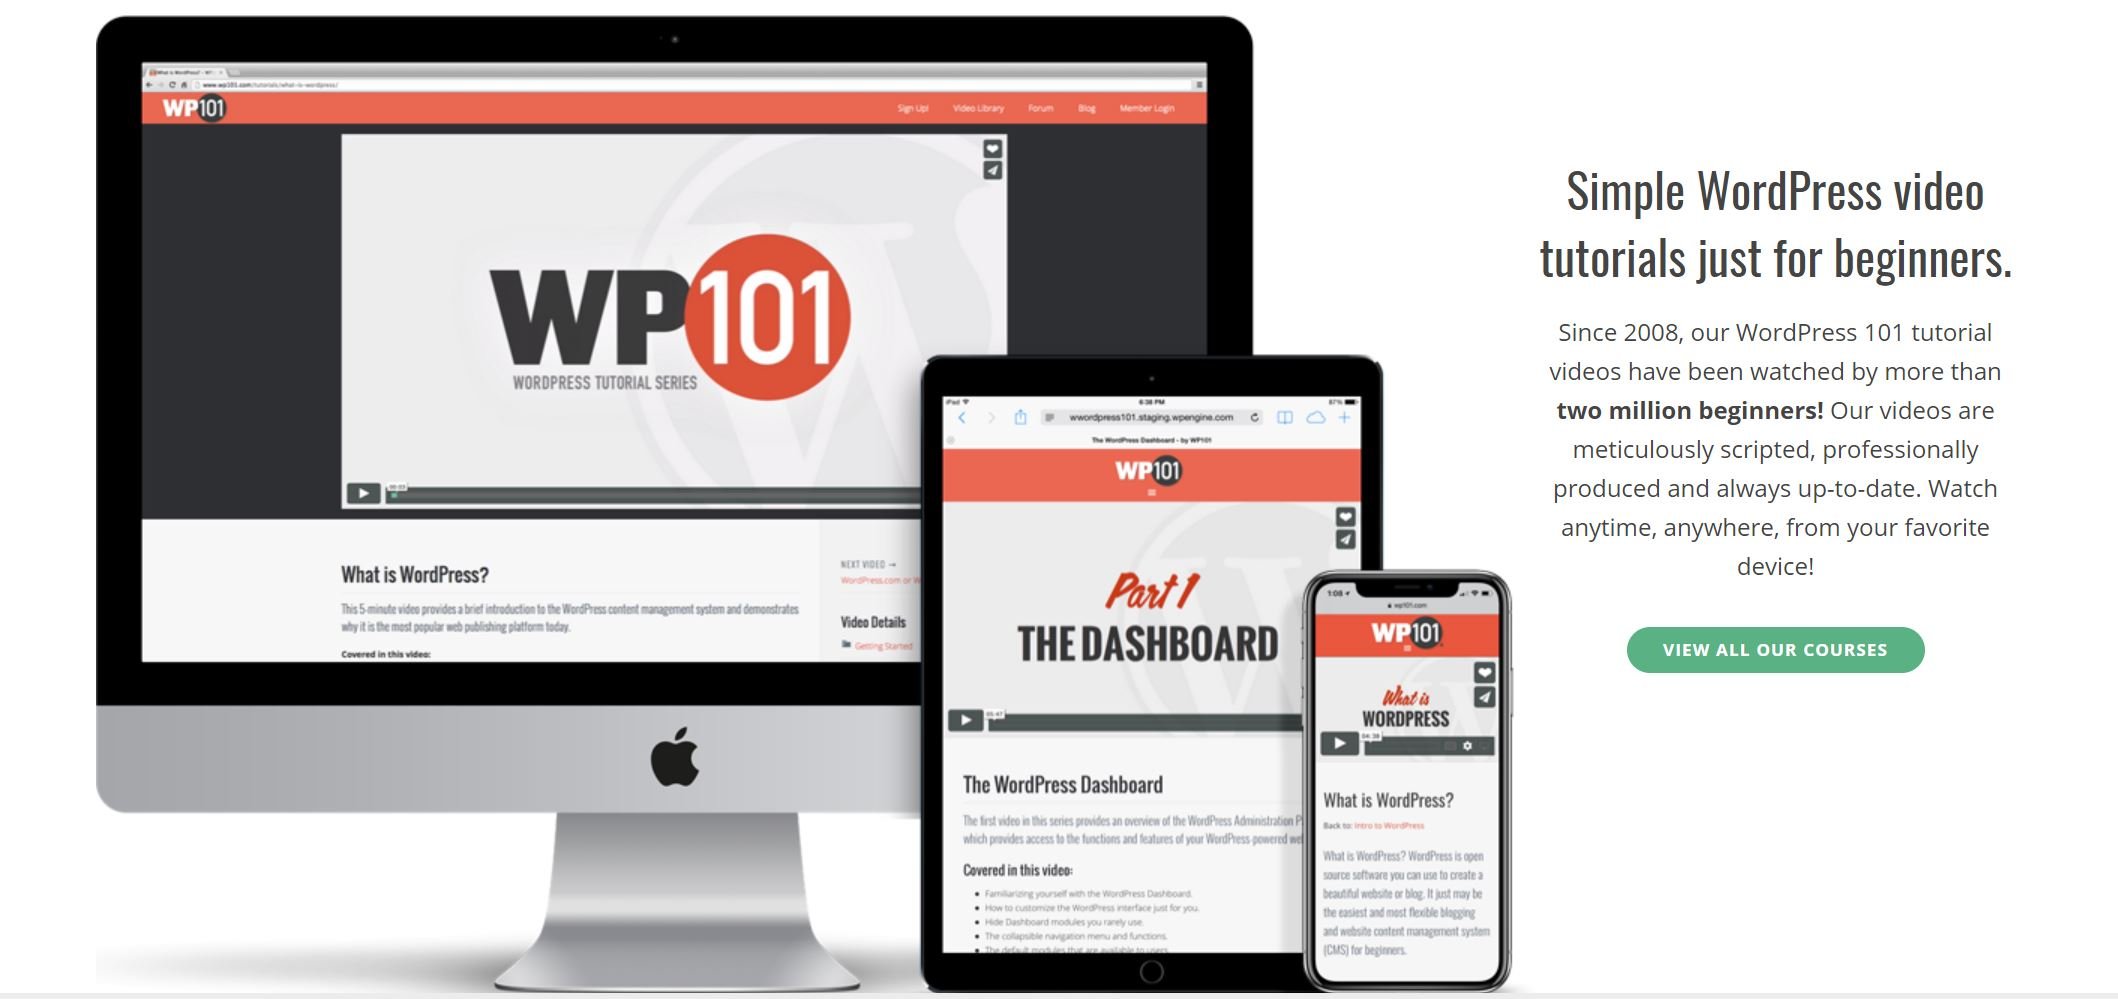 The WordPress 101 website homepage.